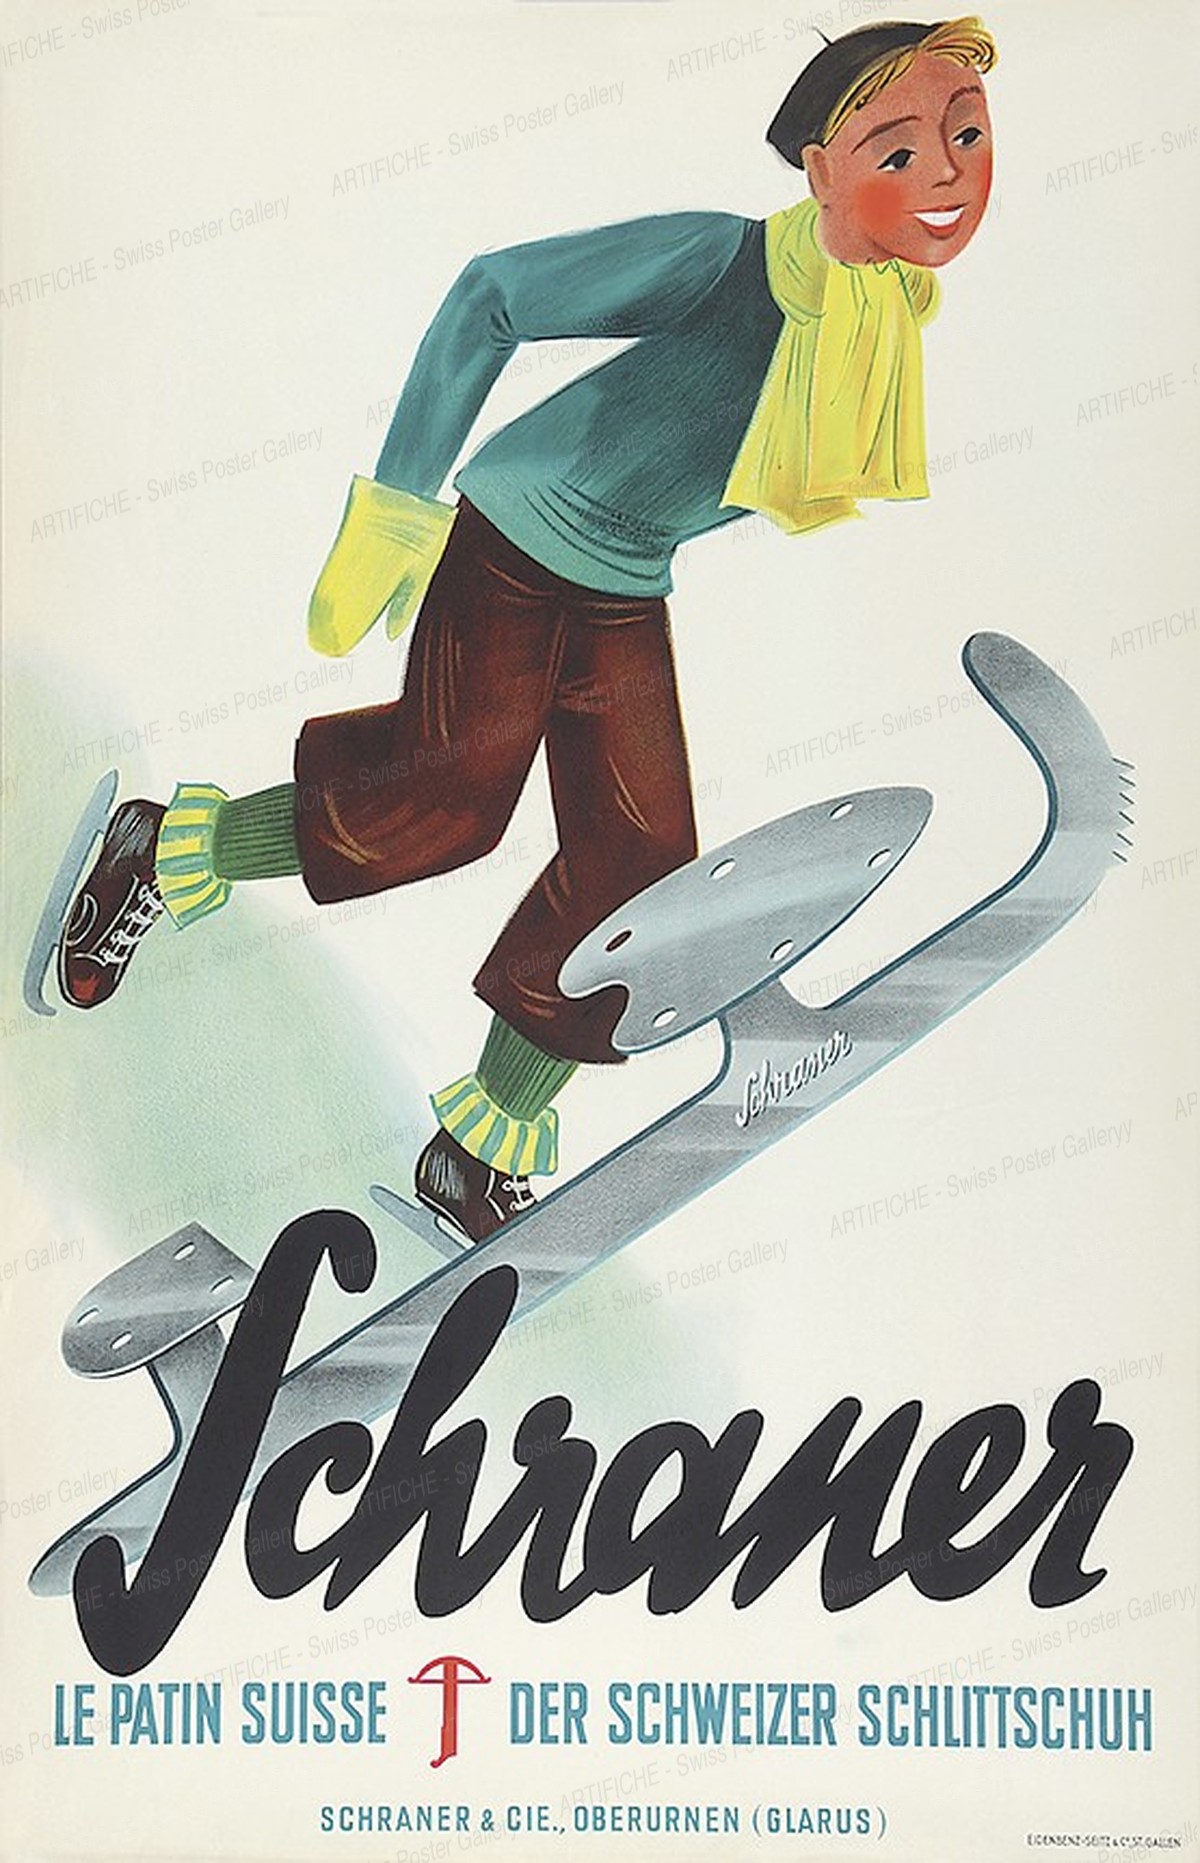 Schraner Ice skates, Artist unknown